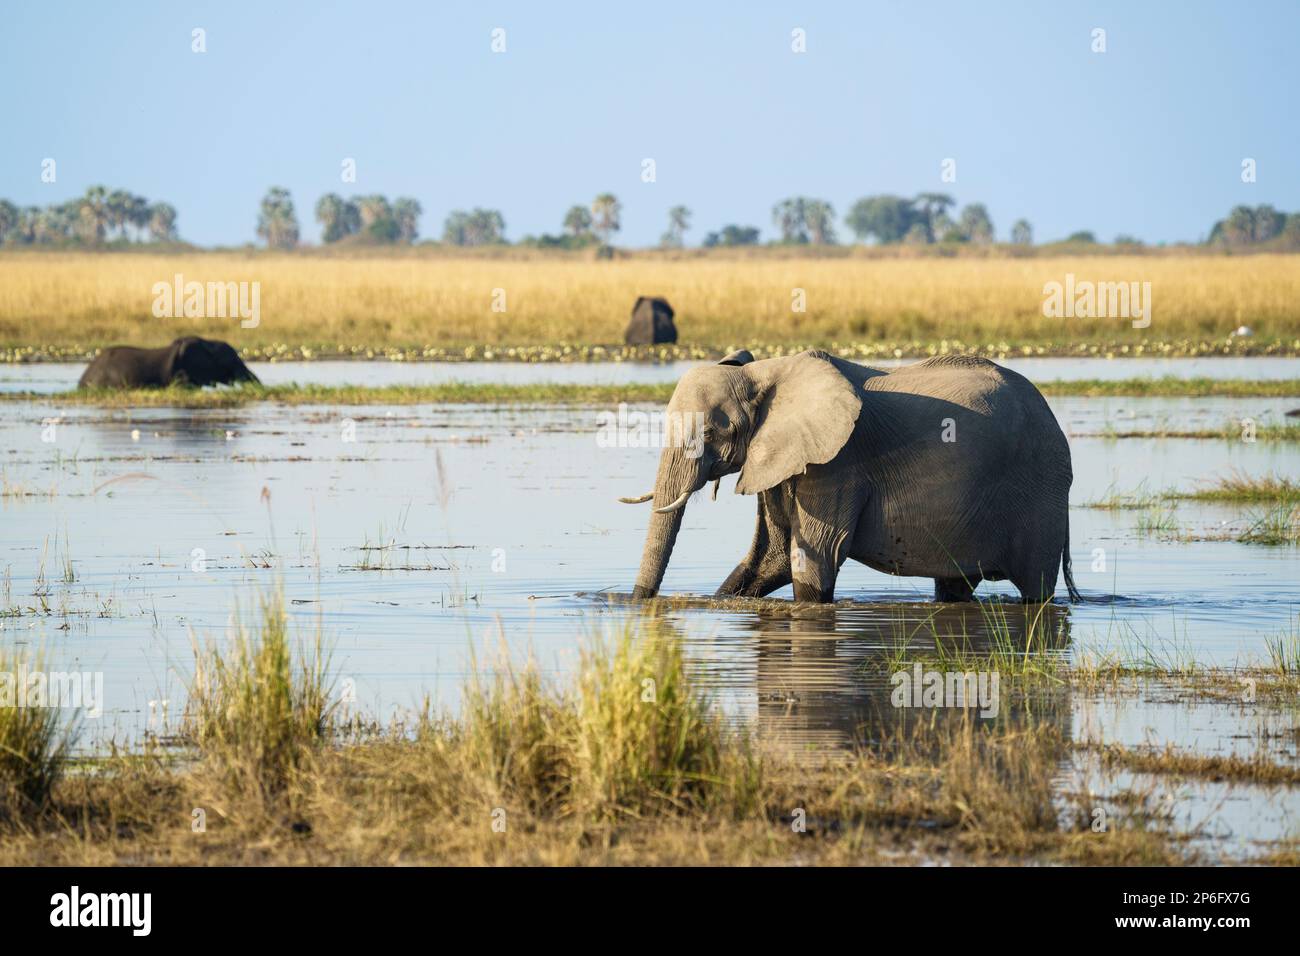 L'éléphant, Loxodenta africana, traverse la rivière Cobe. En traversant l'éléphant est de l'eau potable. Parc national de Chobe, Botswana, Afrique Banque D'Images